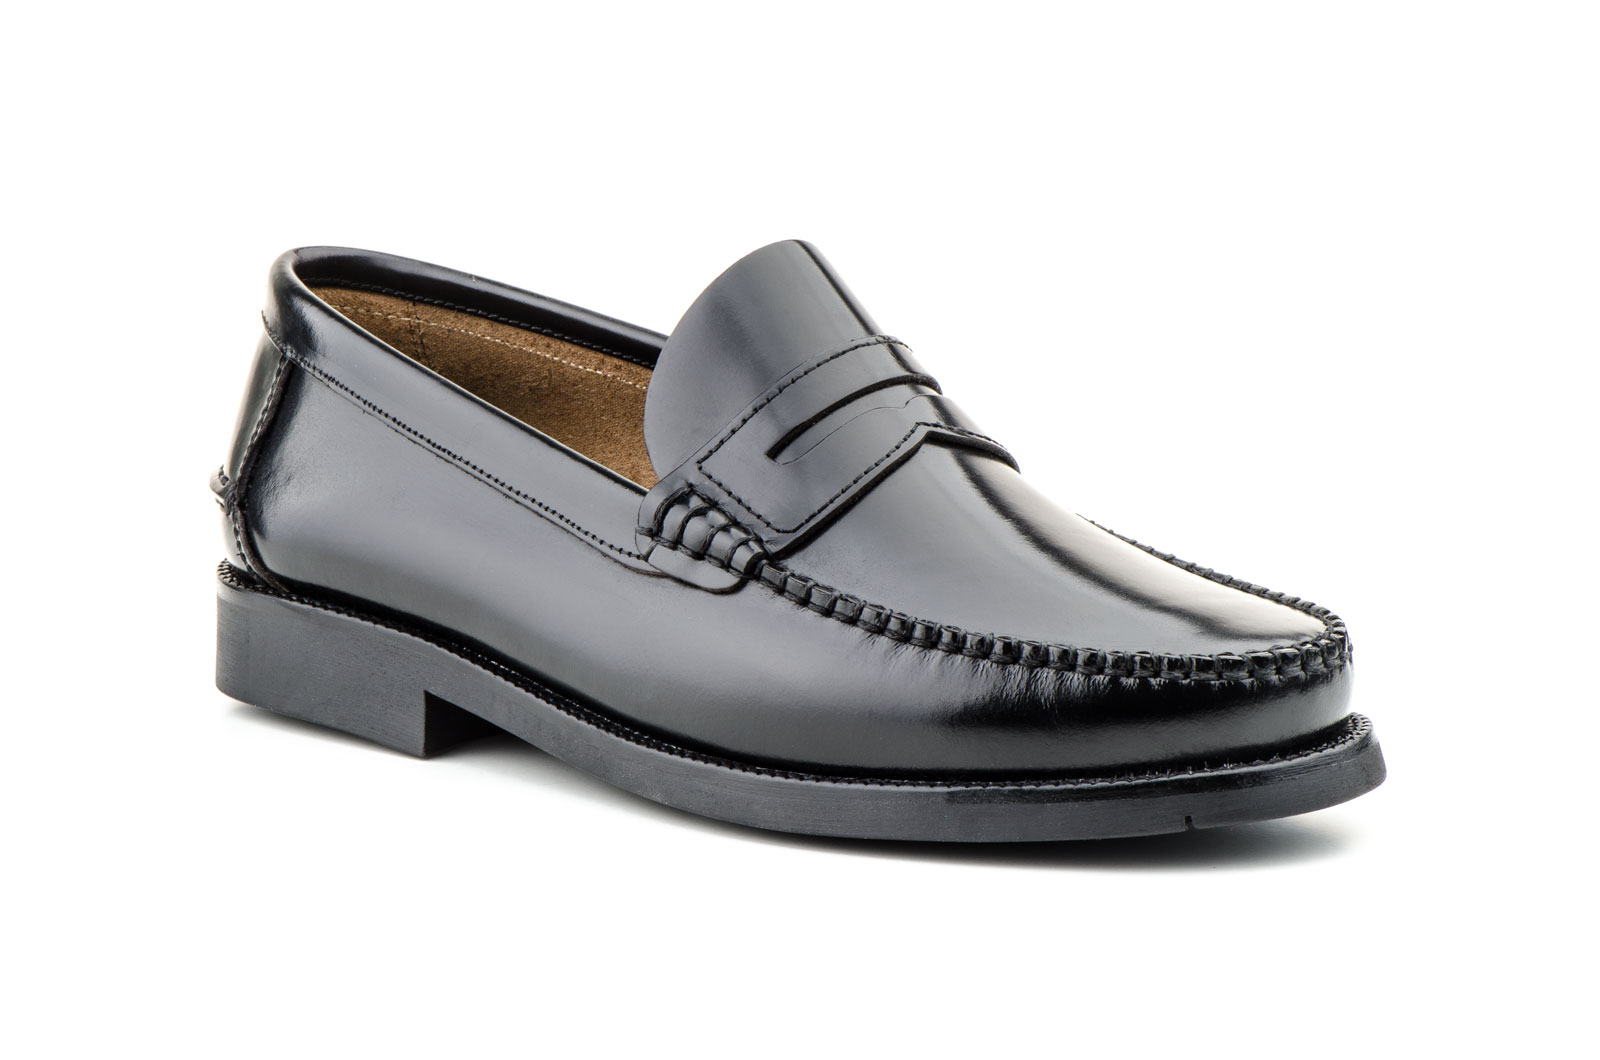 Zapatos Hombre Piel Negro Castellano Suela de Goma Cosida  -  Ref. 1000 Negro